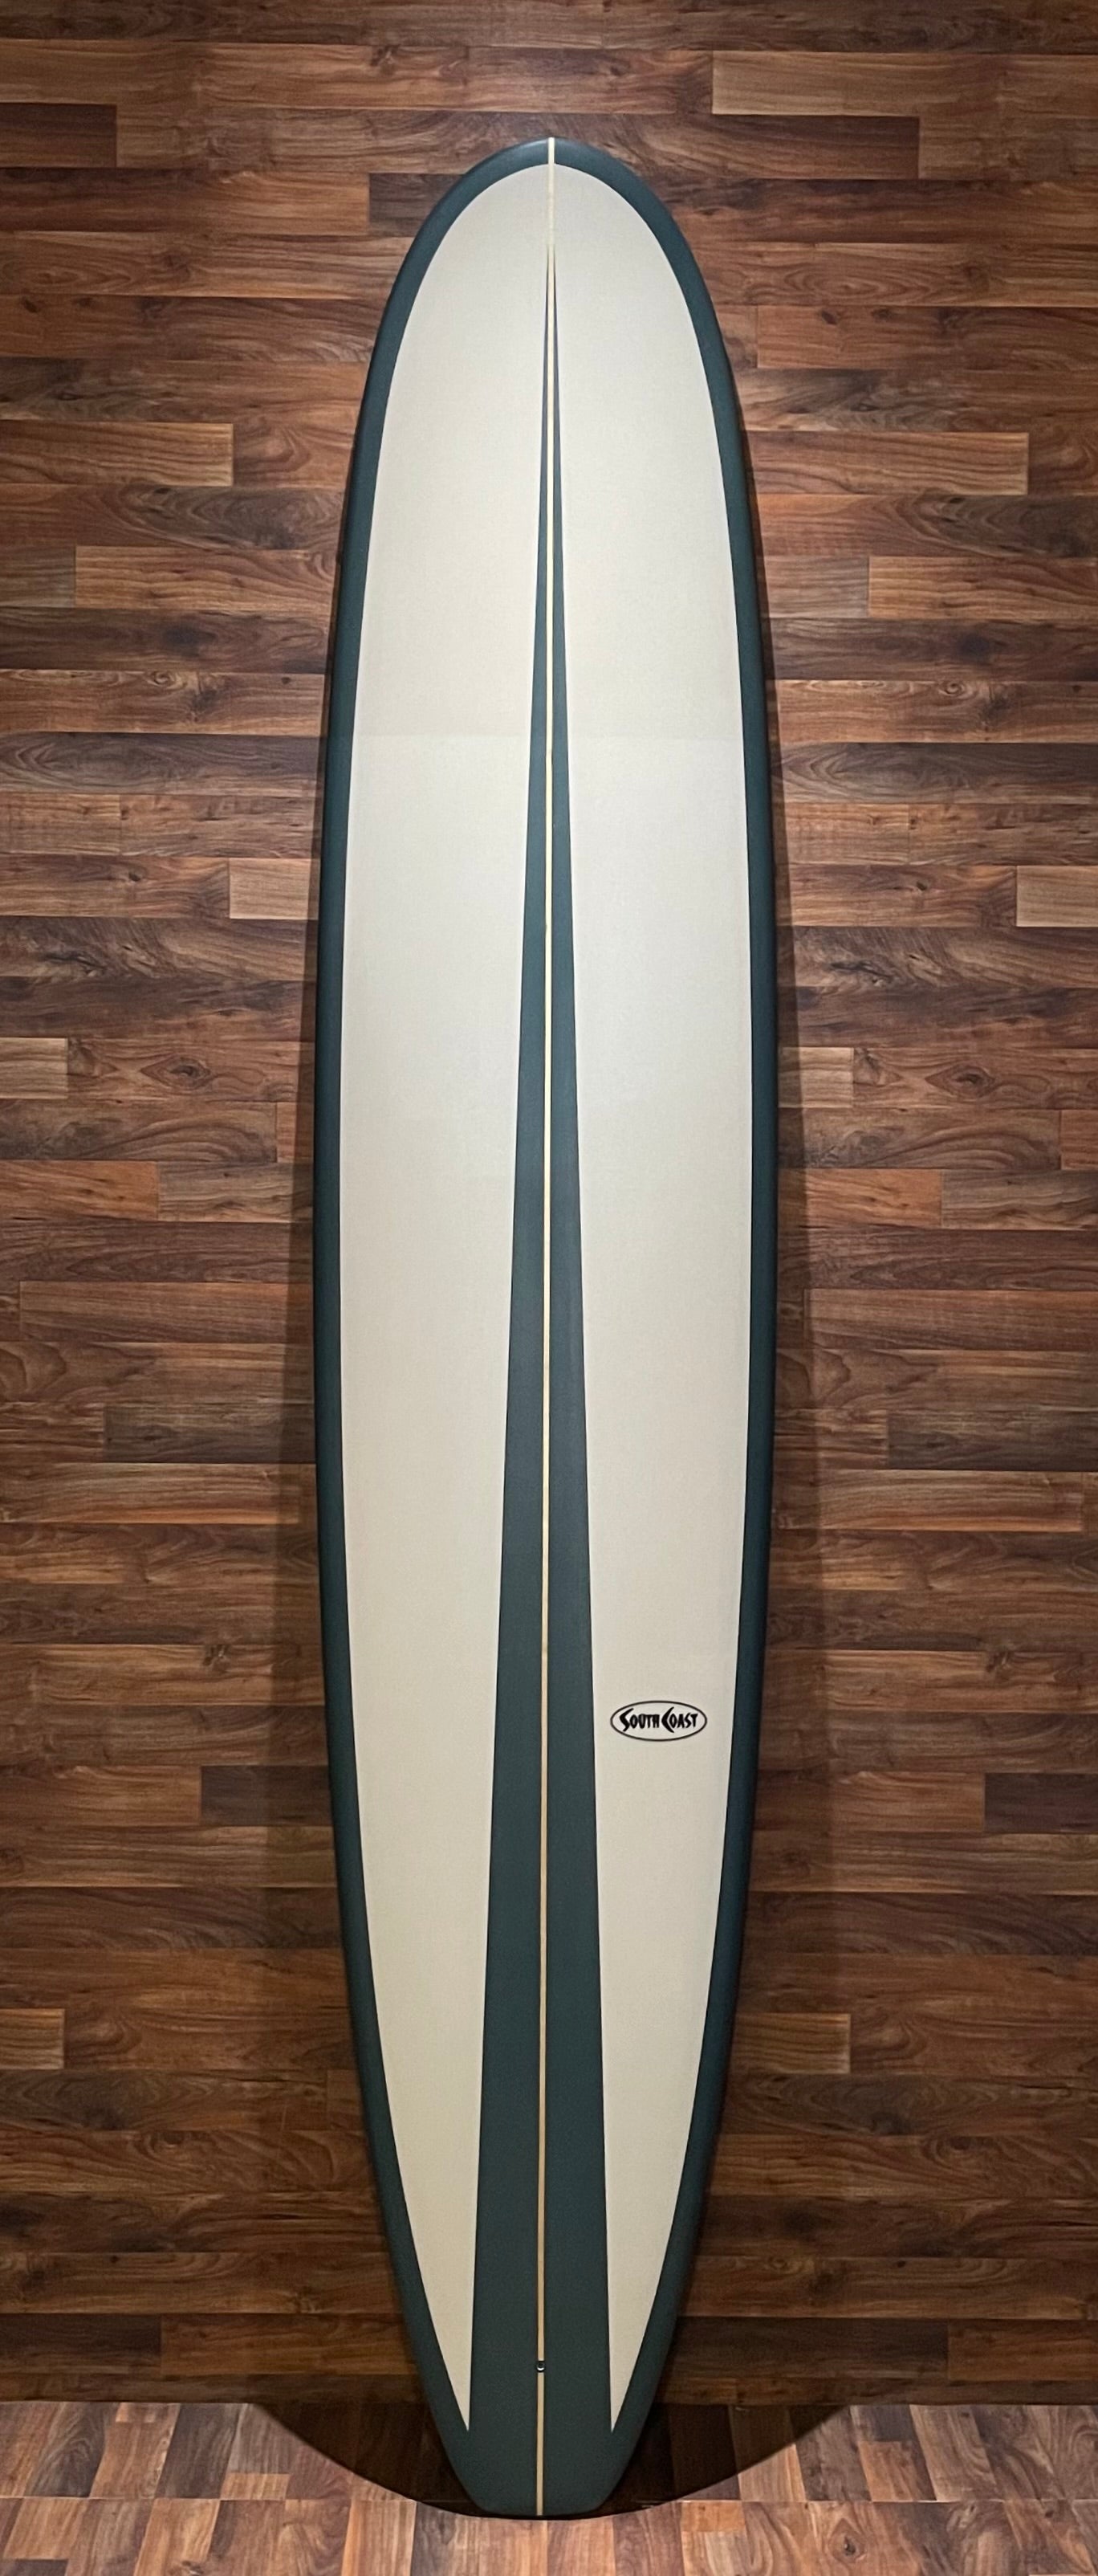 South Coast Cr3 9'4 Surfboard